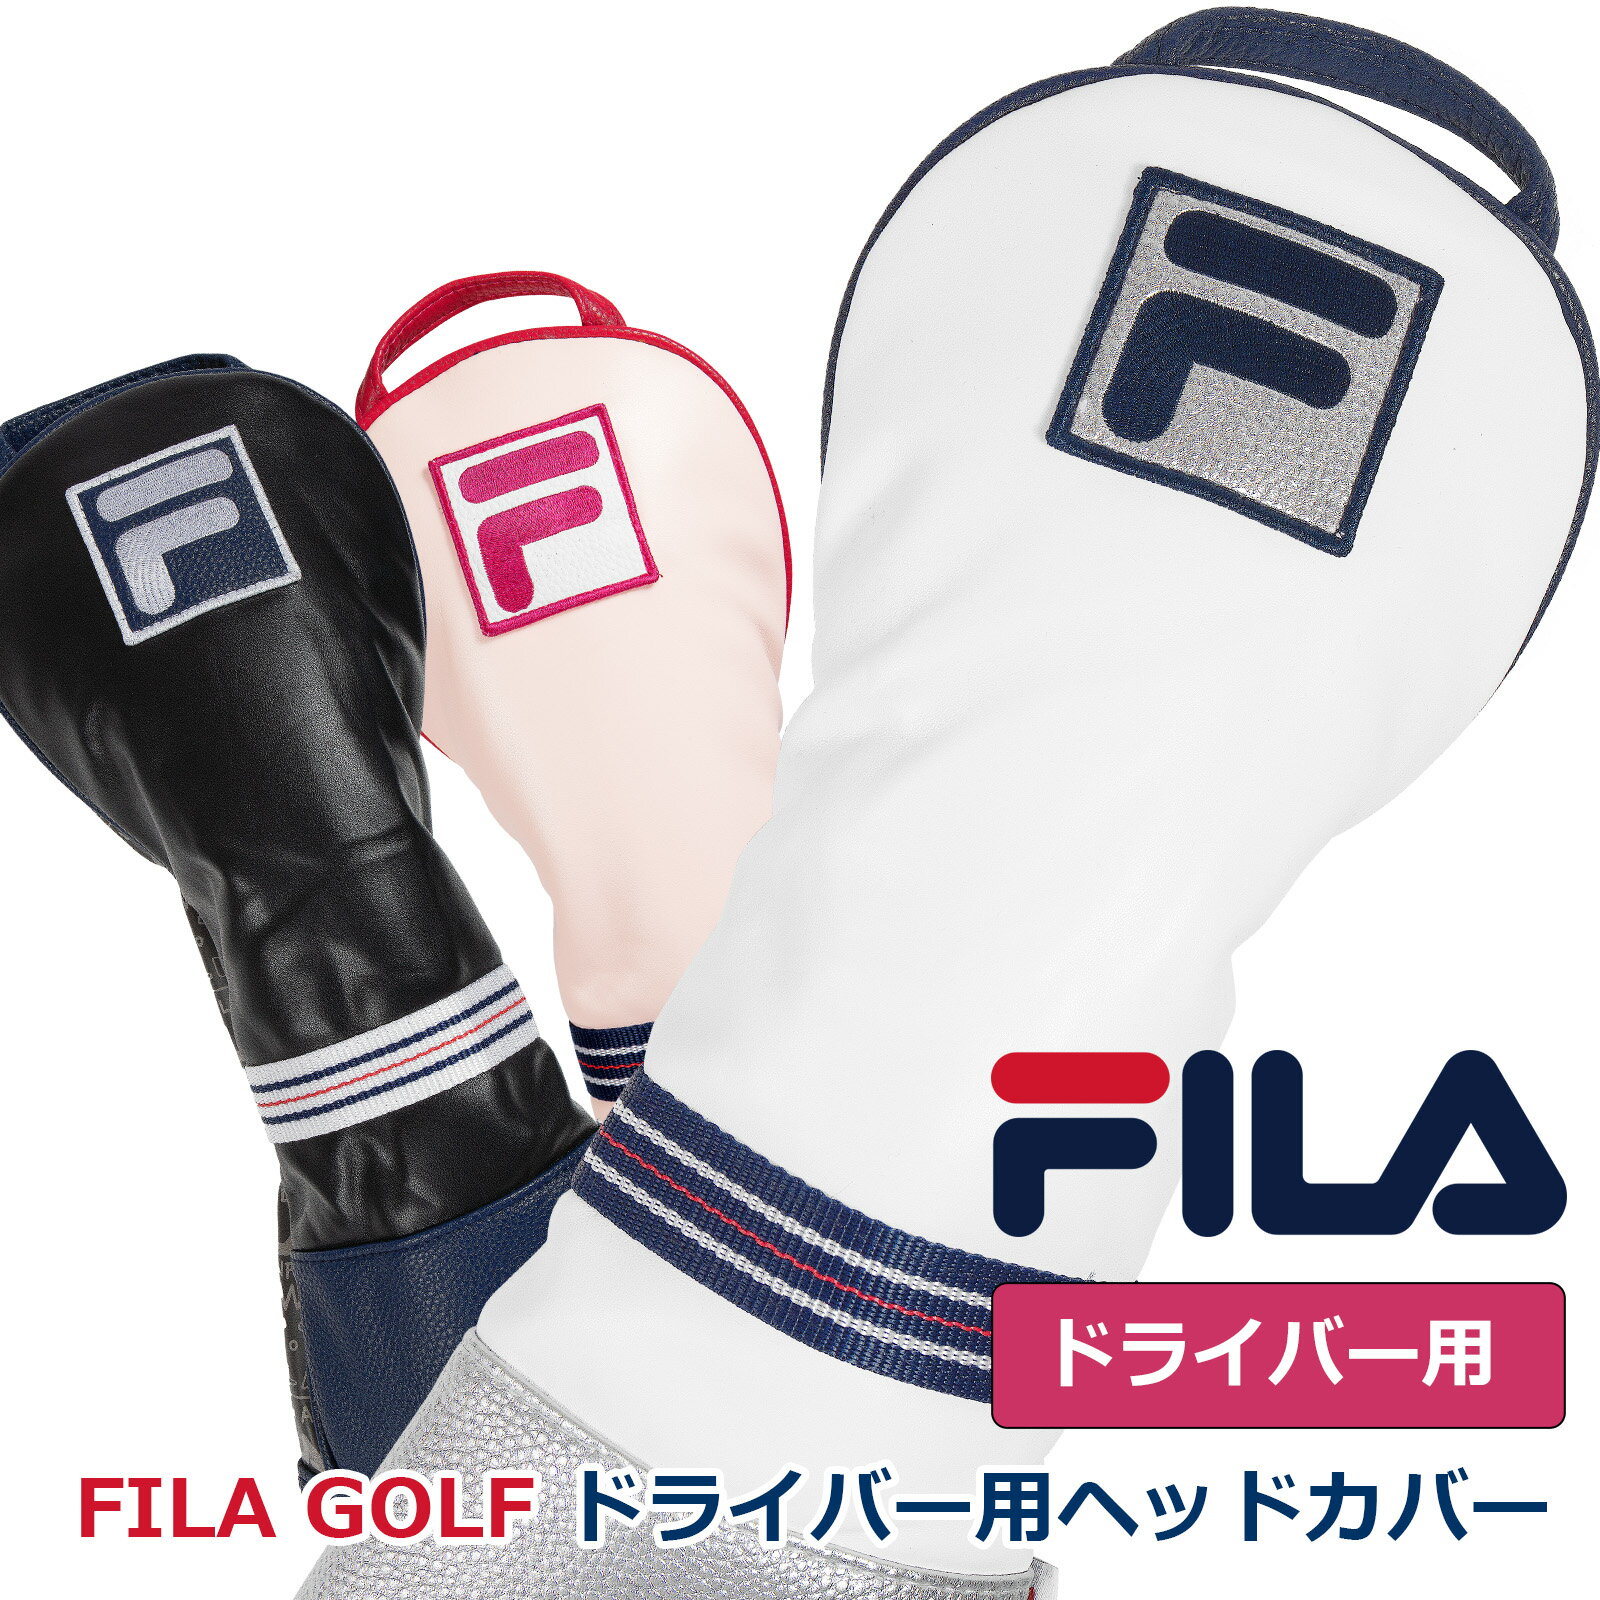 初夏のゴルフ激安セール ゴルフ 有名ブランド FILA ドライバー用 クッション性のあるヘッドカバー メンズレディース兼用 もふもふのソフトな触り心地 ウッド ヘッド保護 シンプルなソックスタ…